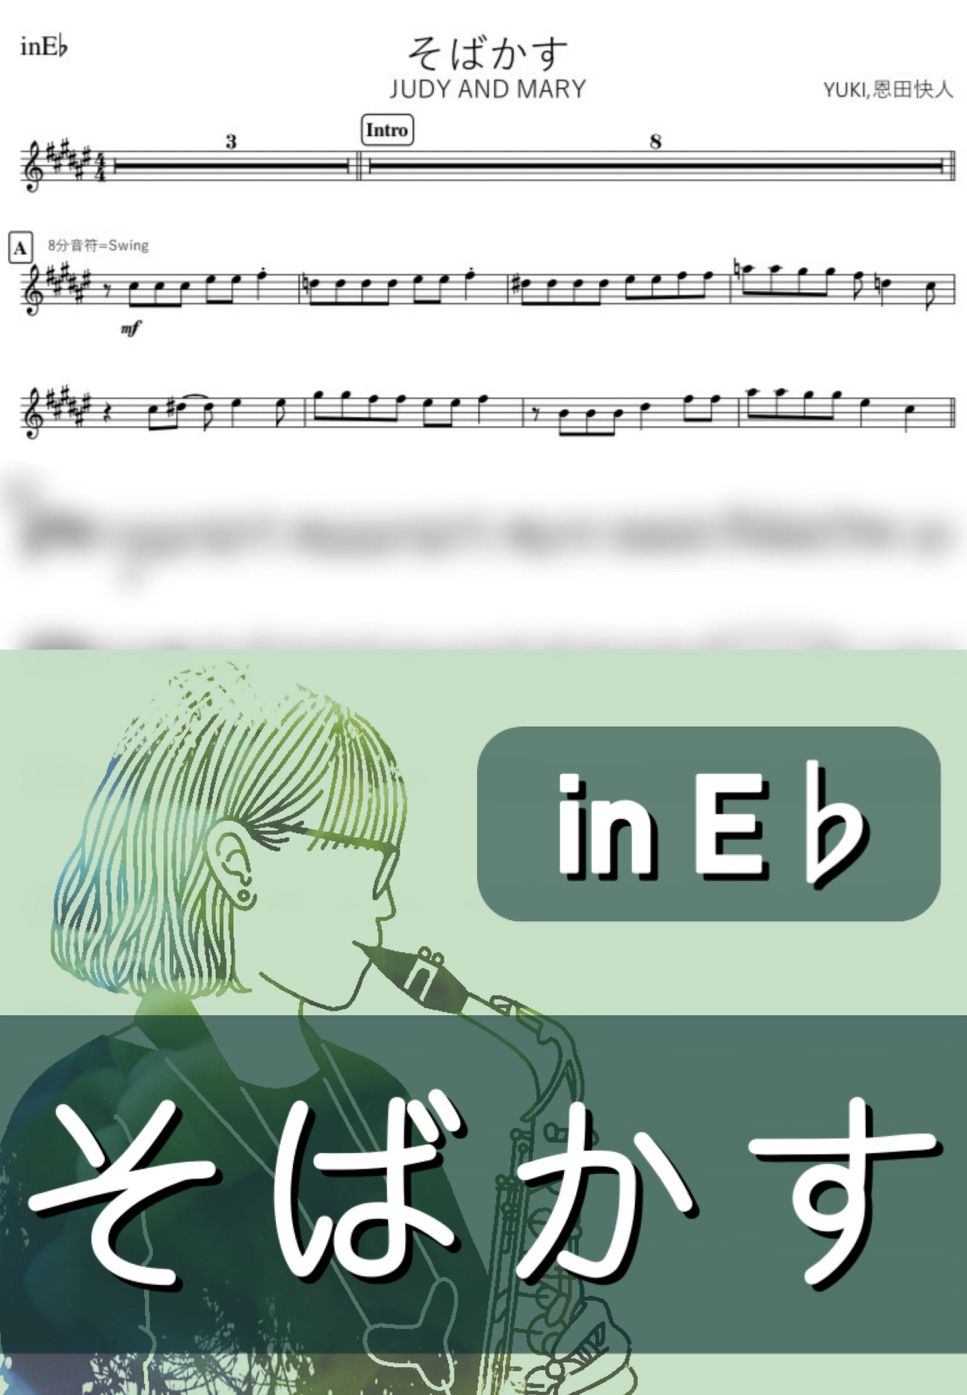 JUDY AND MARY - そばかす (E♭) by kanamusic